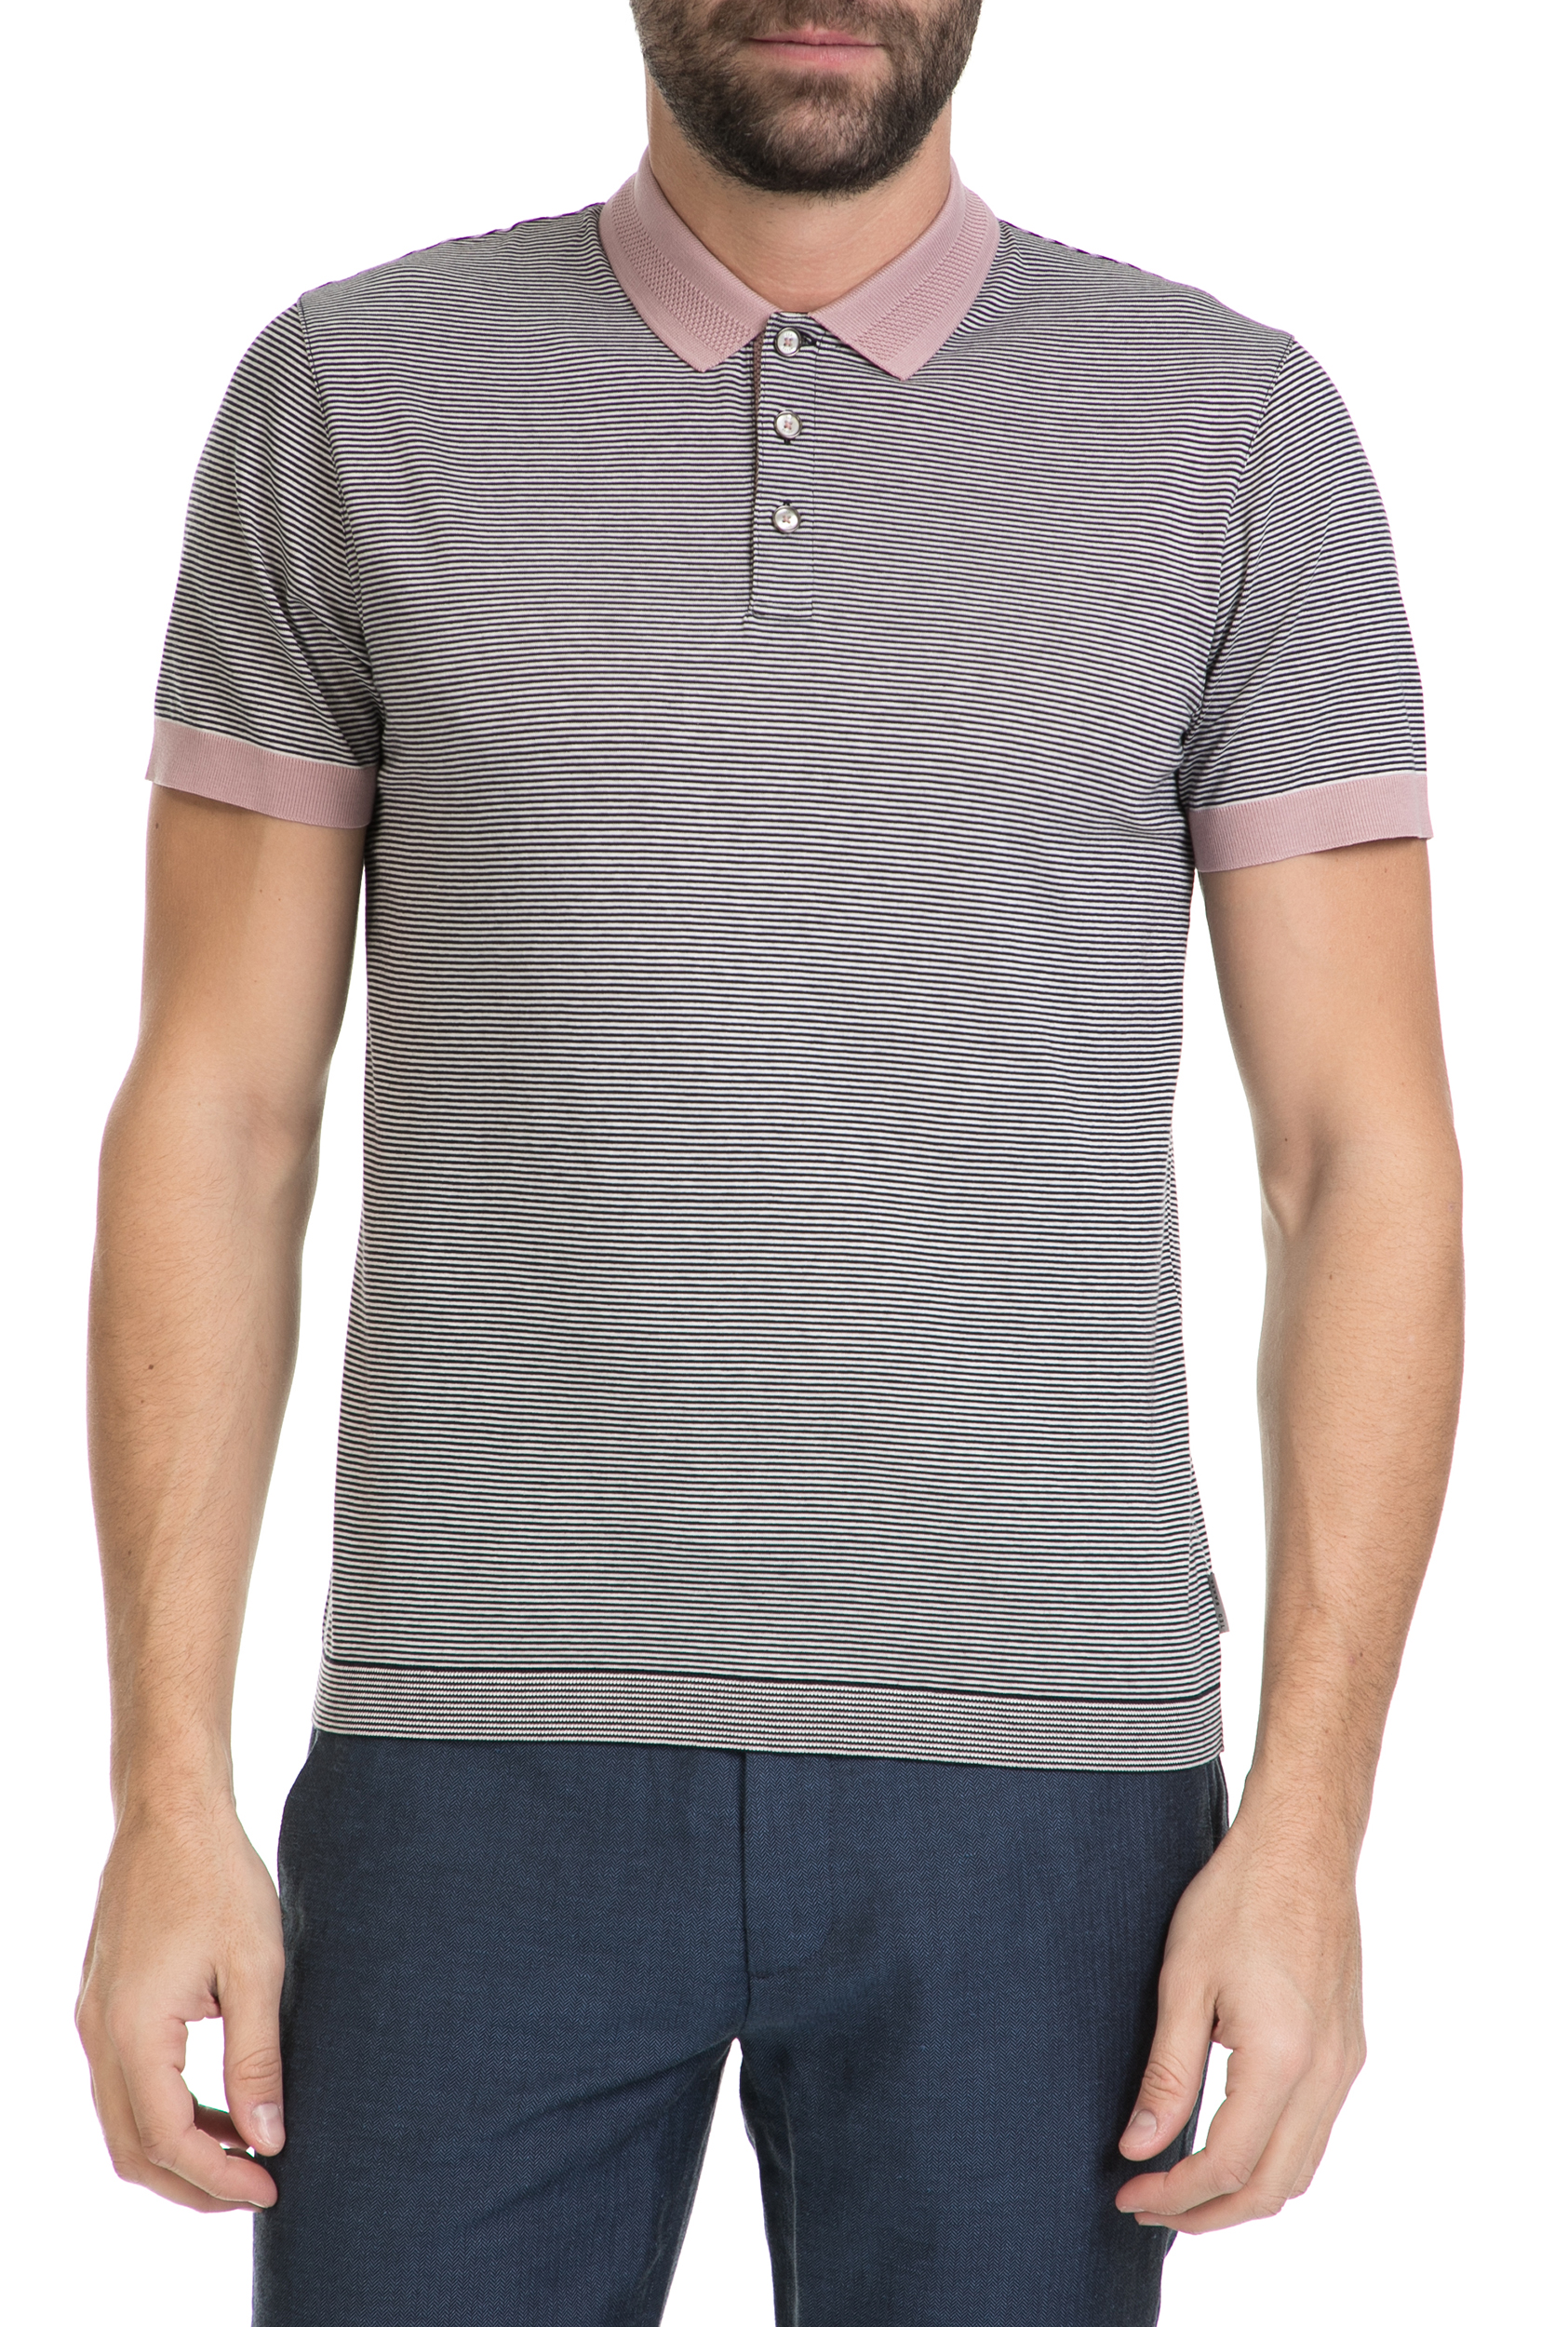 Ανδρικά/Ρούχα/Μπλούζες/Πόλο TED BAKER - Ανδρικό πόλο t-shirt TED BAKER BEAGLE ριγέ